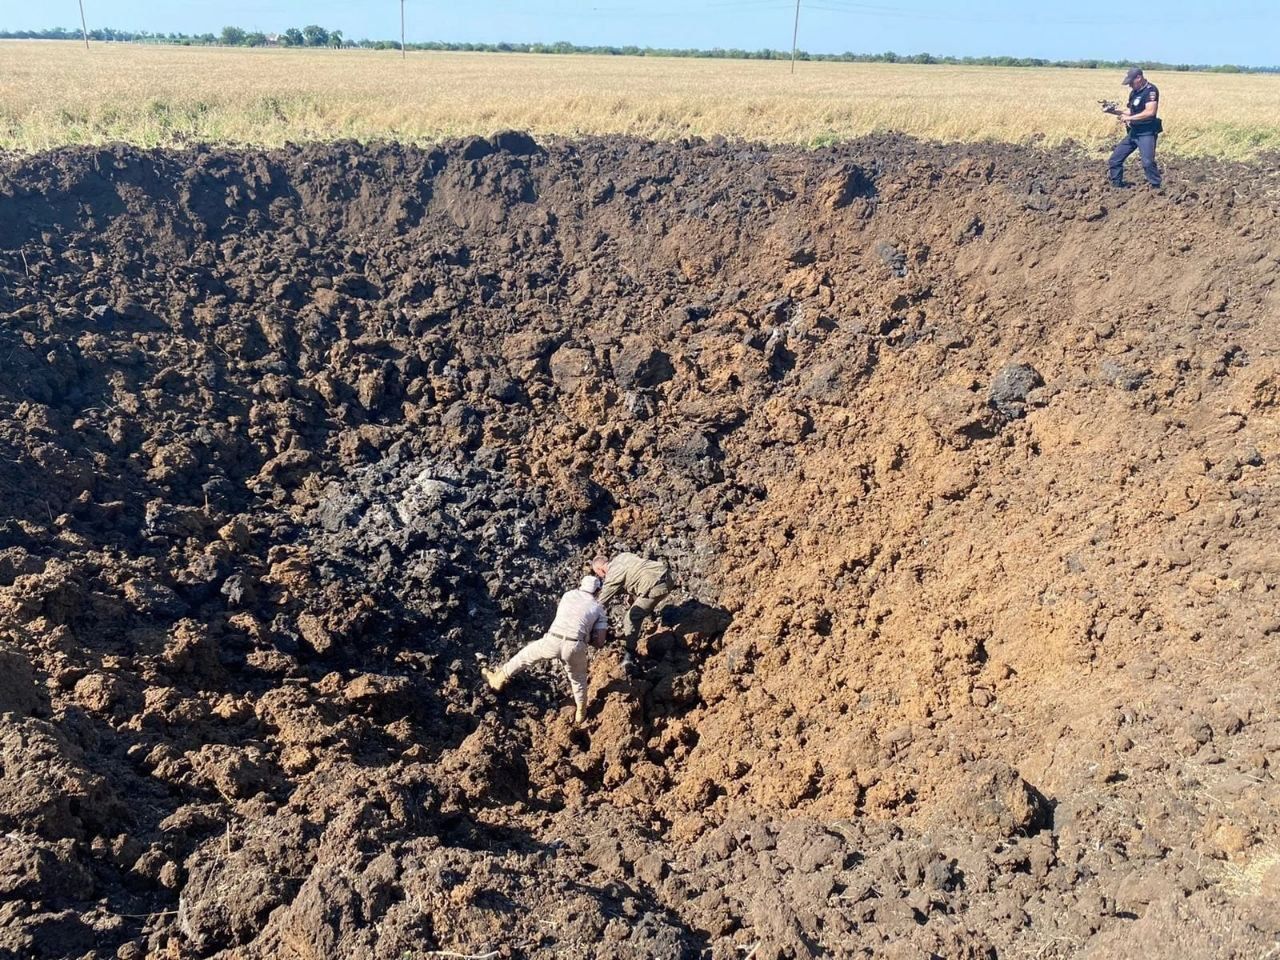 Воронка 20 м в диаметре: в Краснодарском крае возле военного аэродрома упала ракета - СМИ